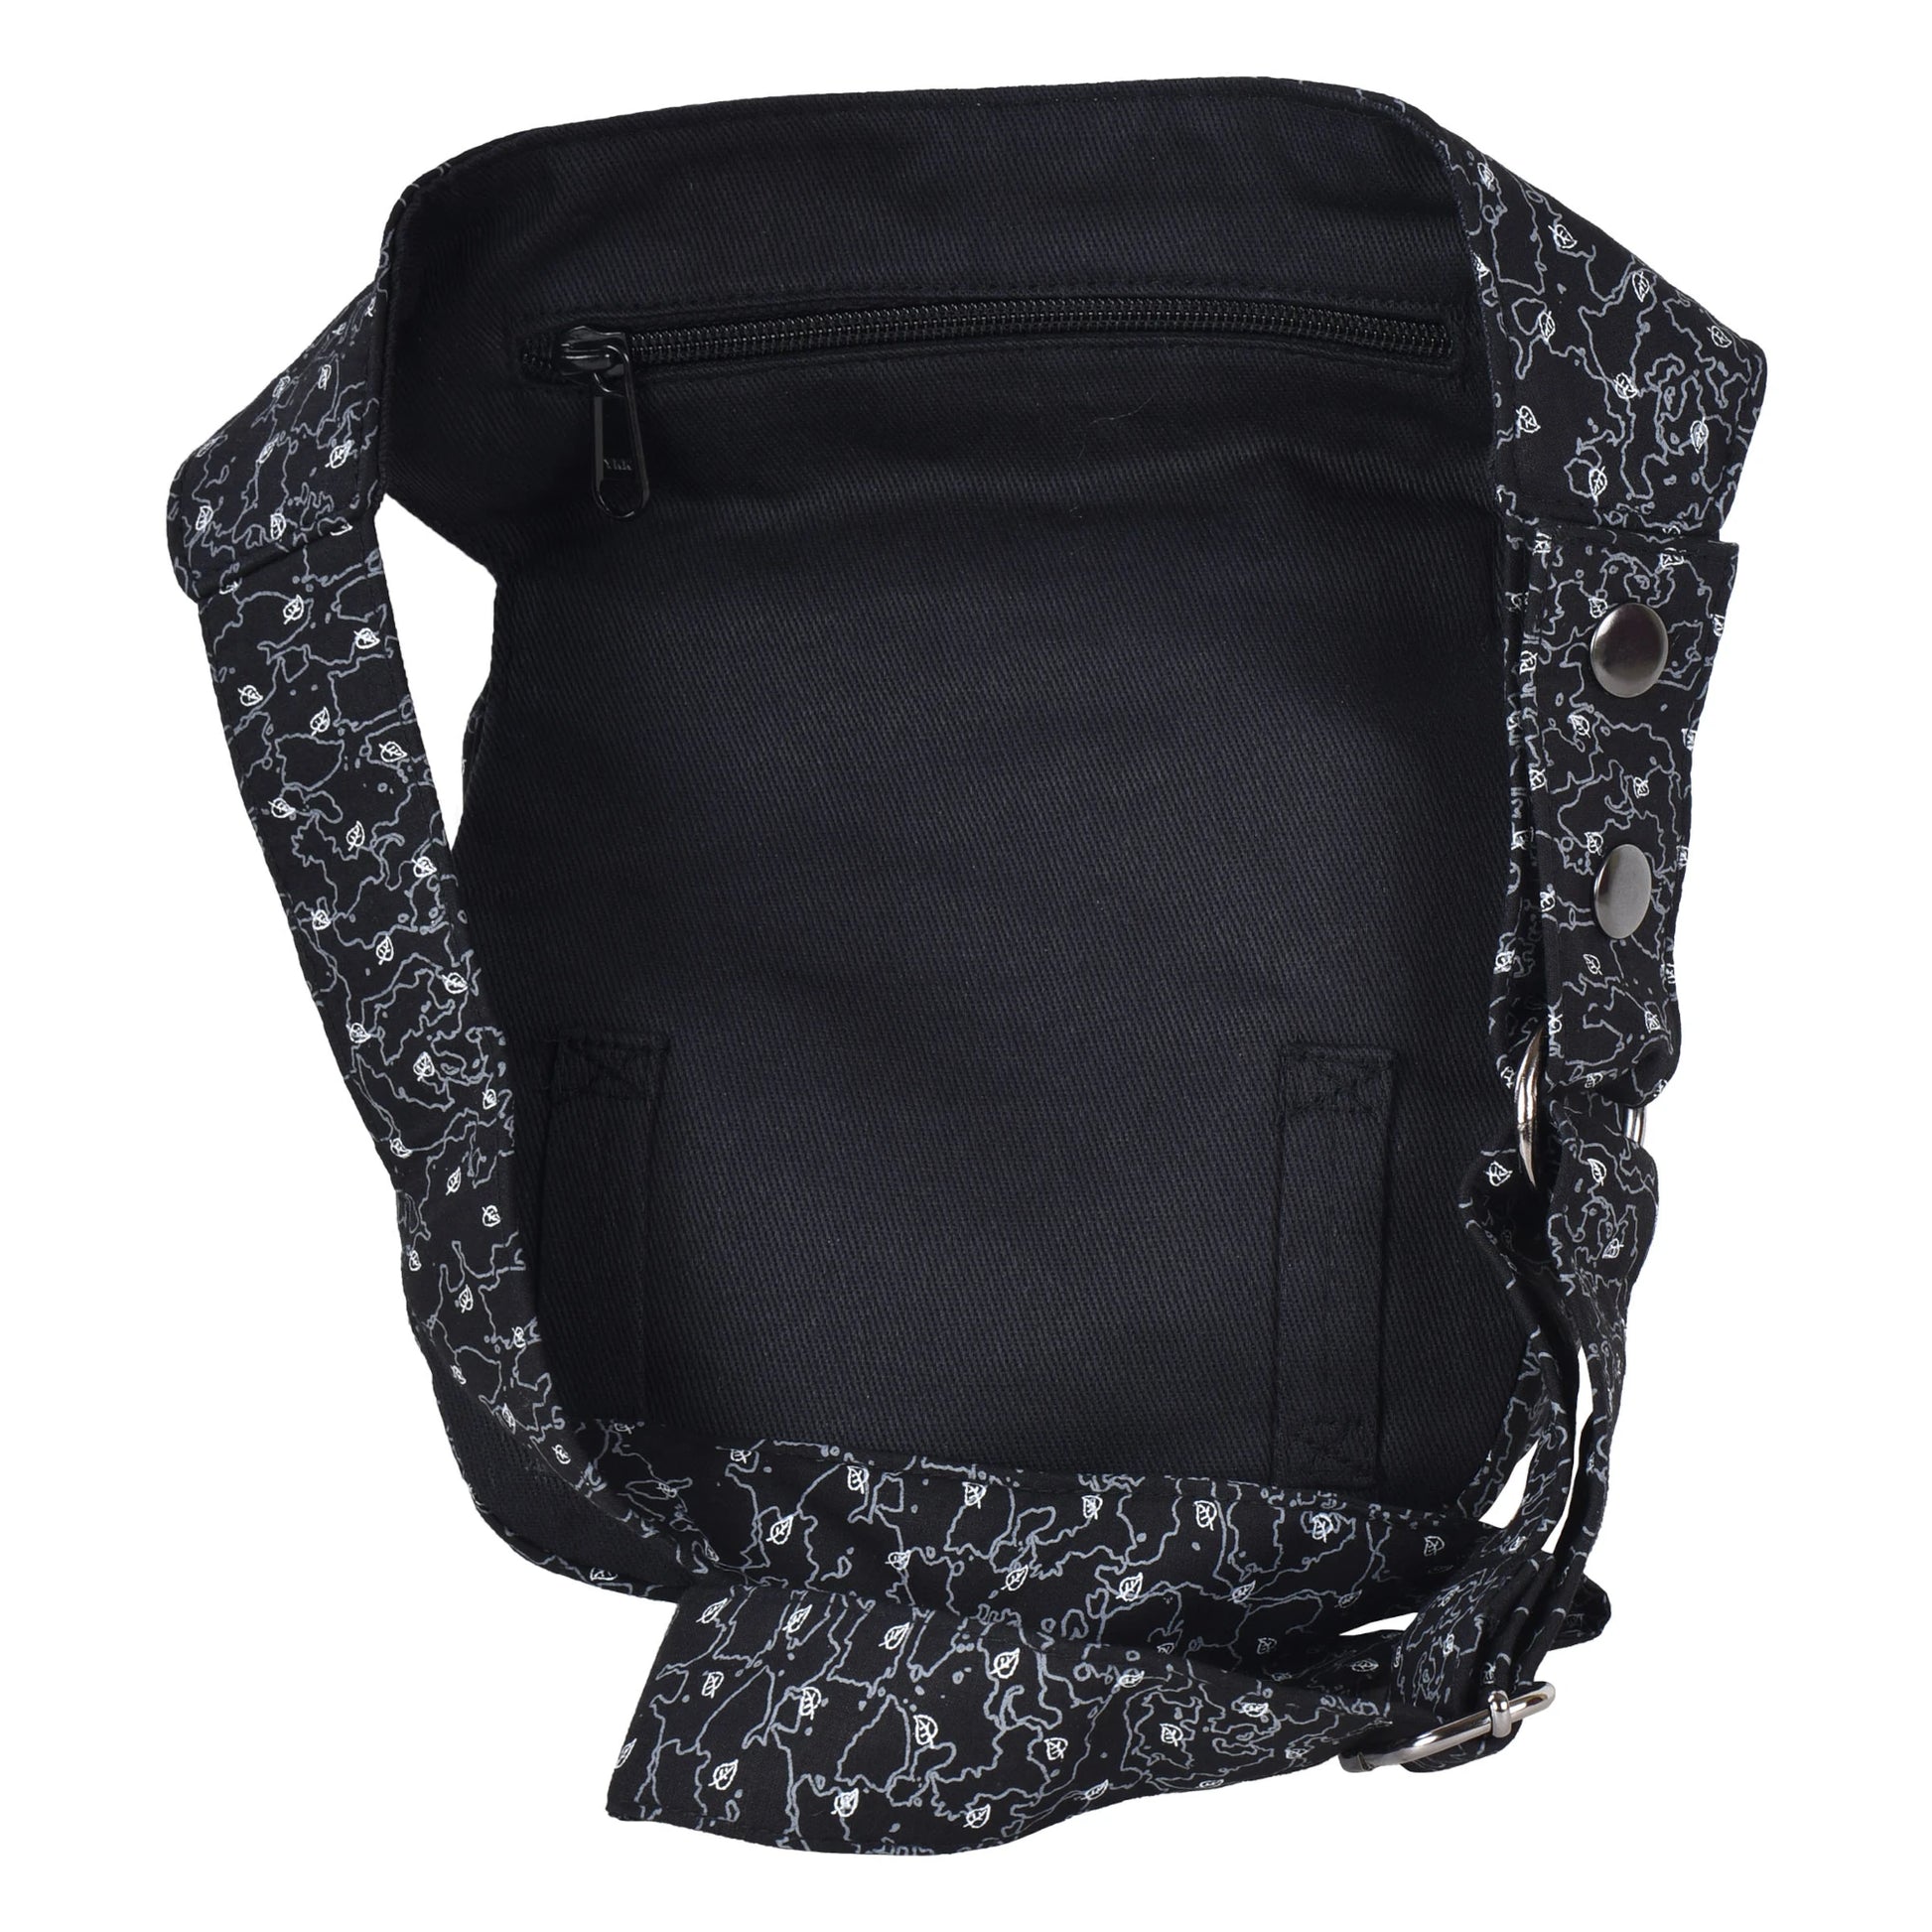 Bauchtasche Hüfttasche Stoff Baumwolle in Schwarz weiß und Muster Mix mit Reißverschlussfach und zwei Gürtelschlaufen auf der hinteren Seite.